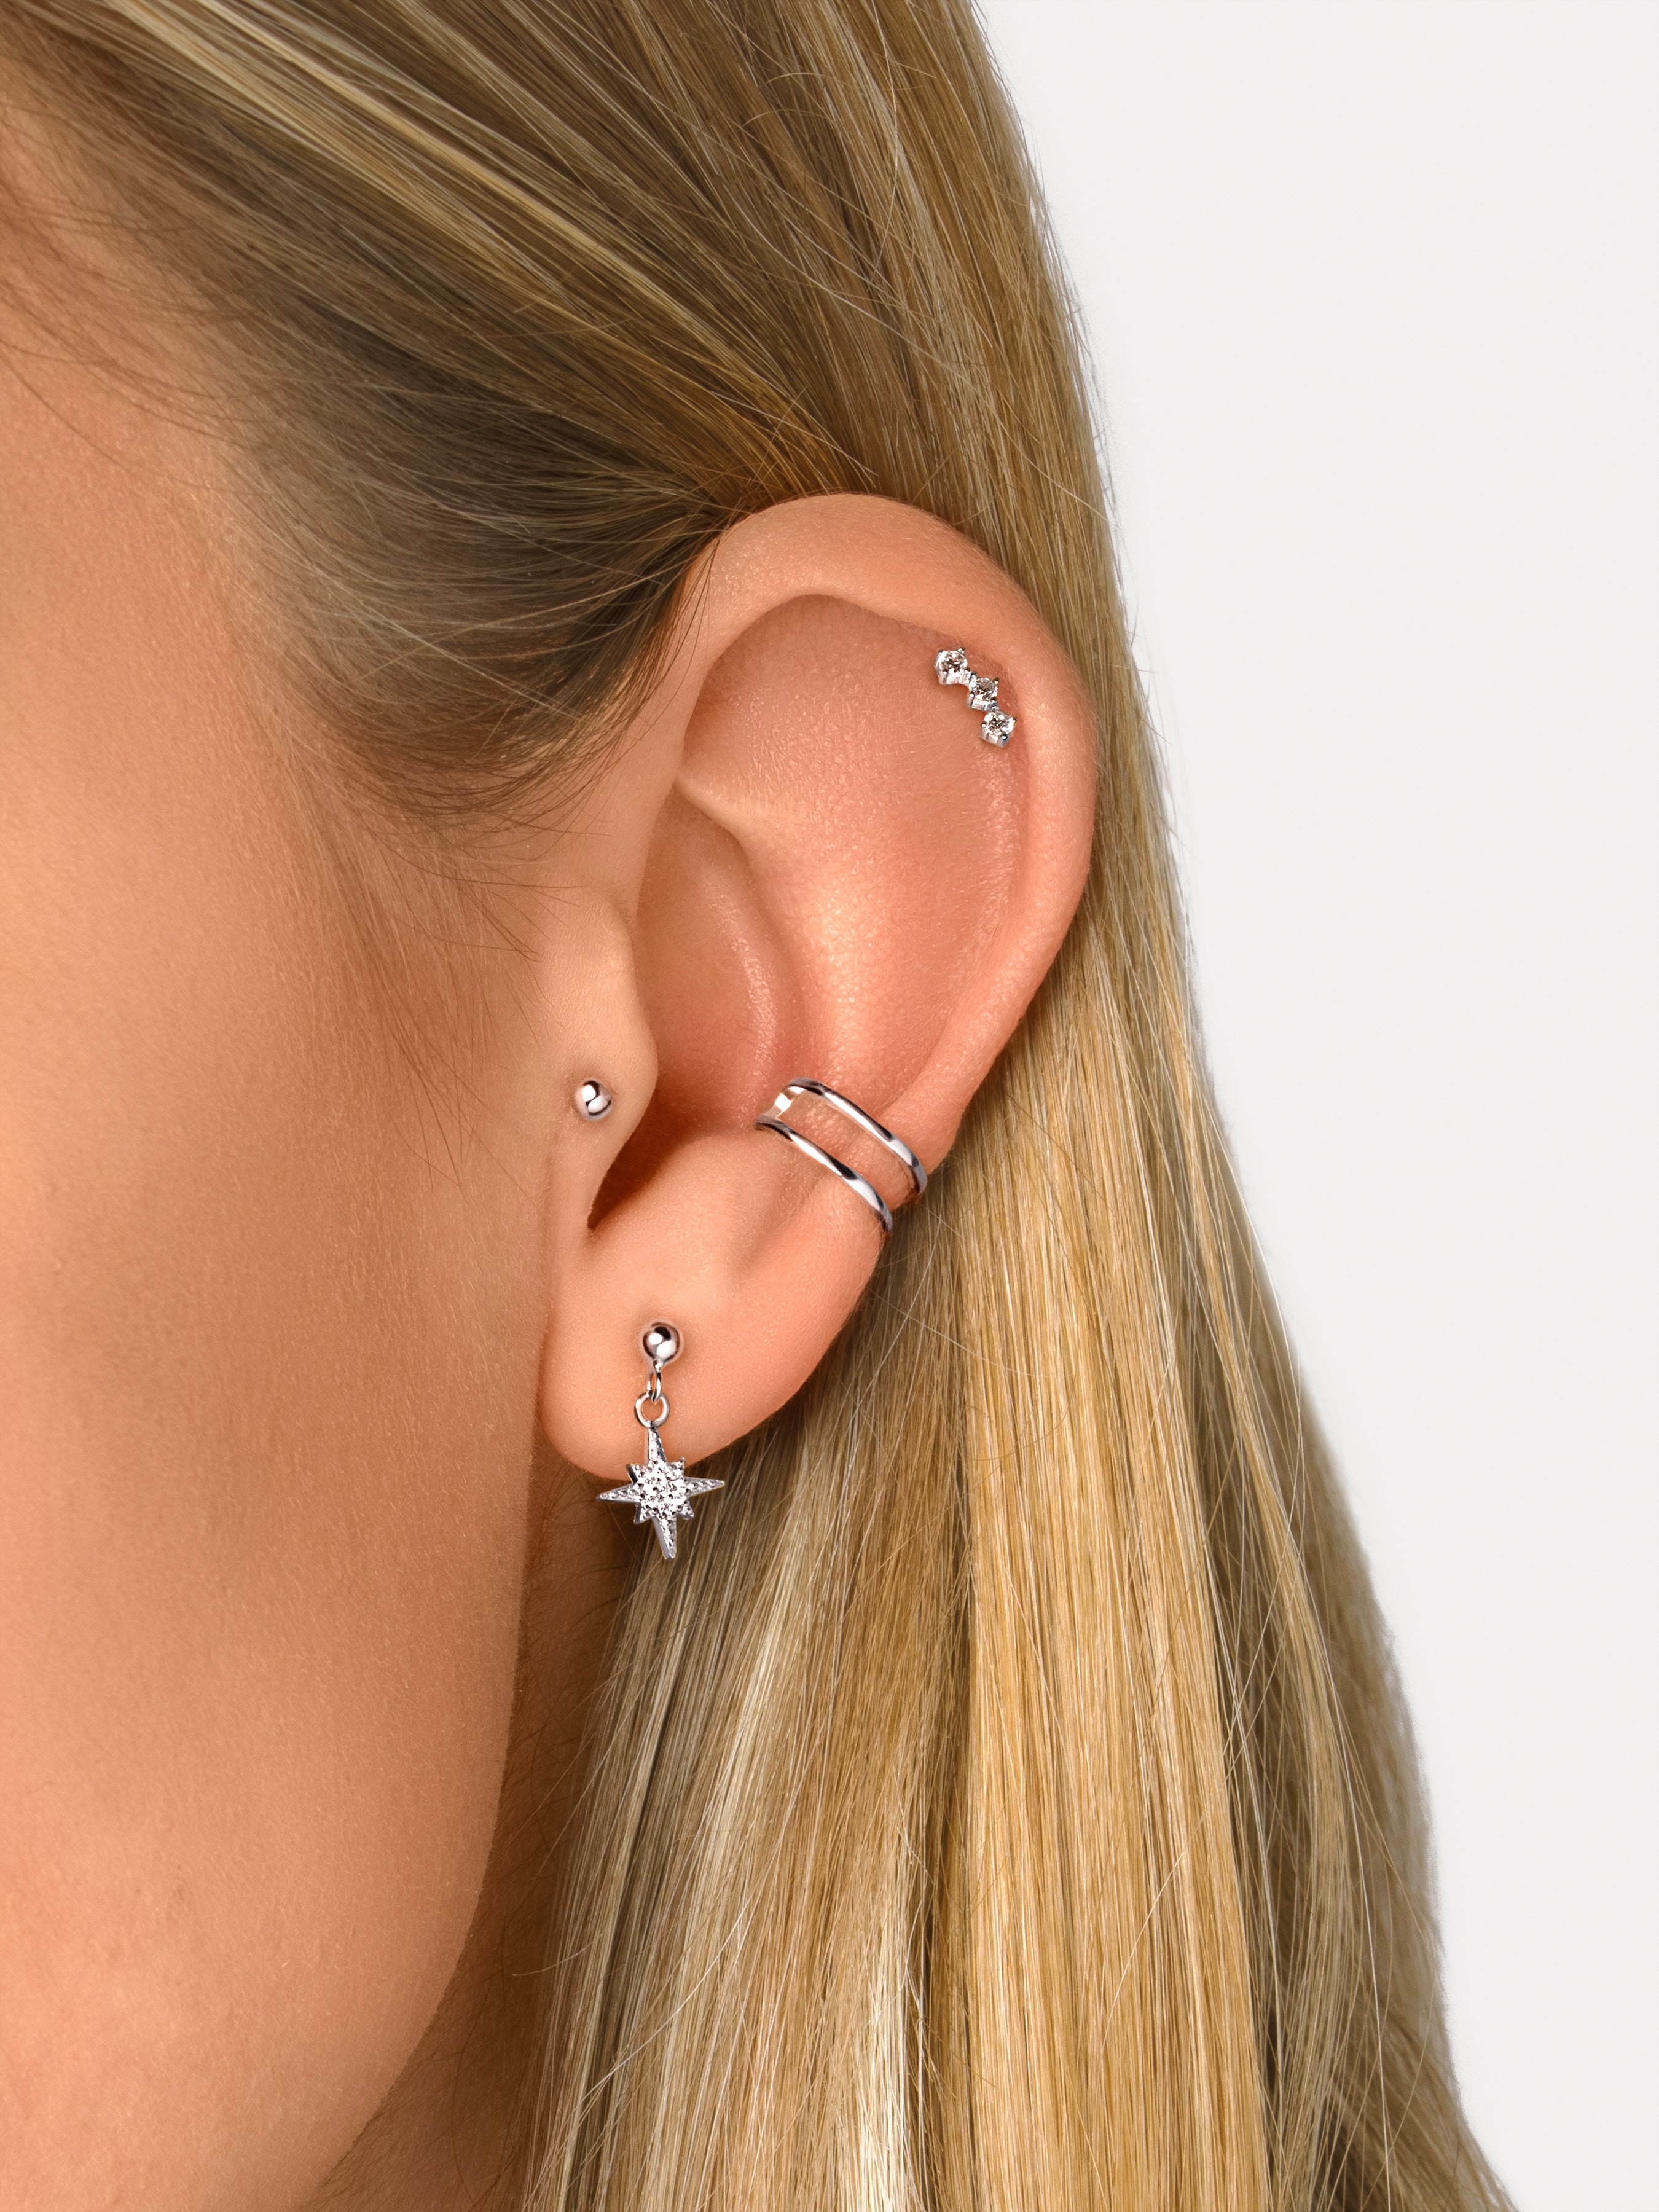 Triple Spark Silver Single Earring